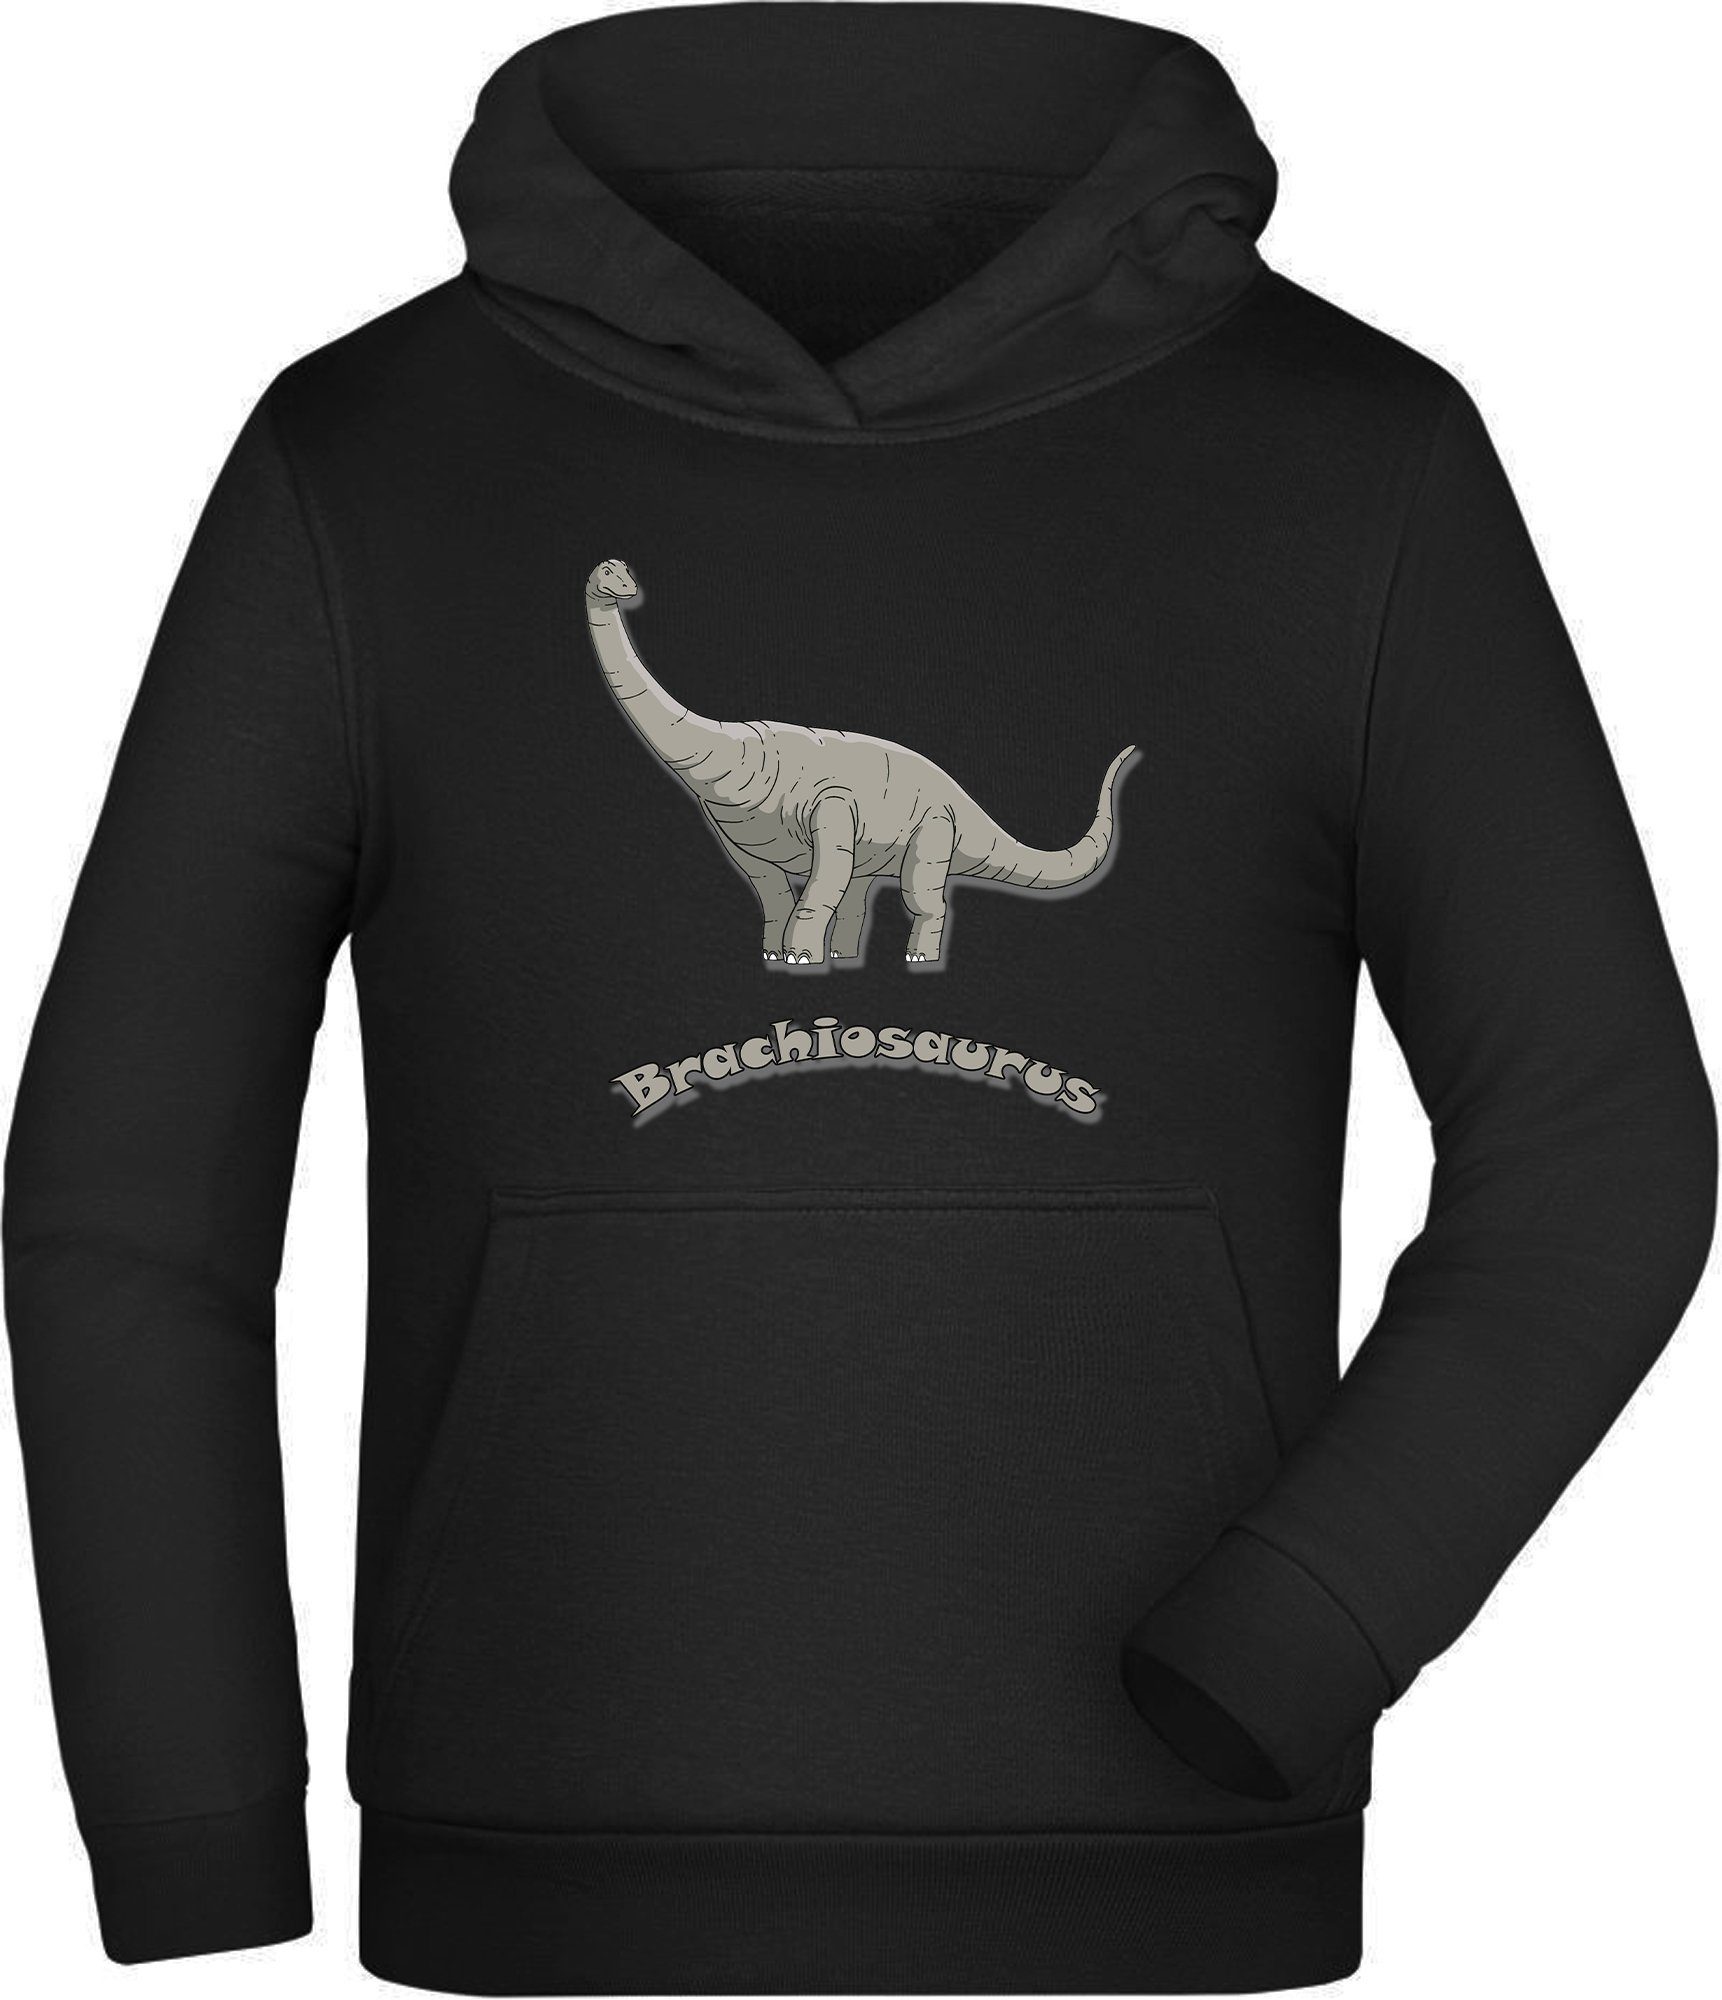 Hoodie Kinder Sweatshirt mit Brachiosaurus i66 MyDesign24 mit Kapuzen Kapuzensweater Aufdruck,